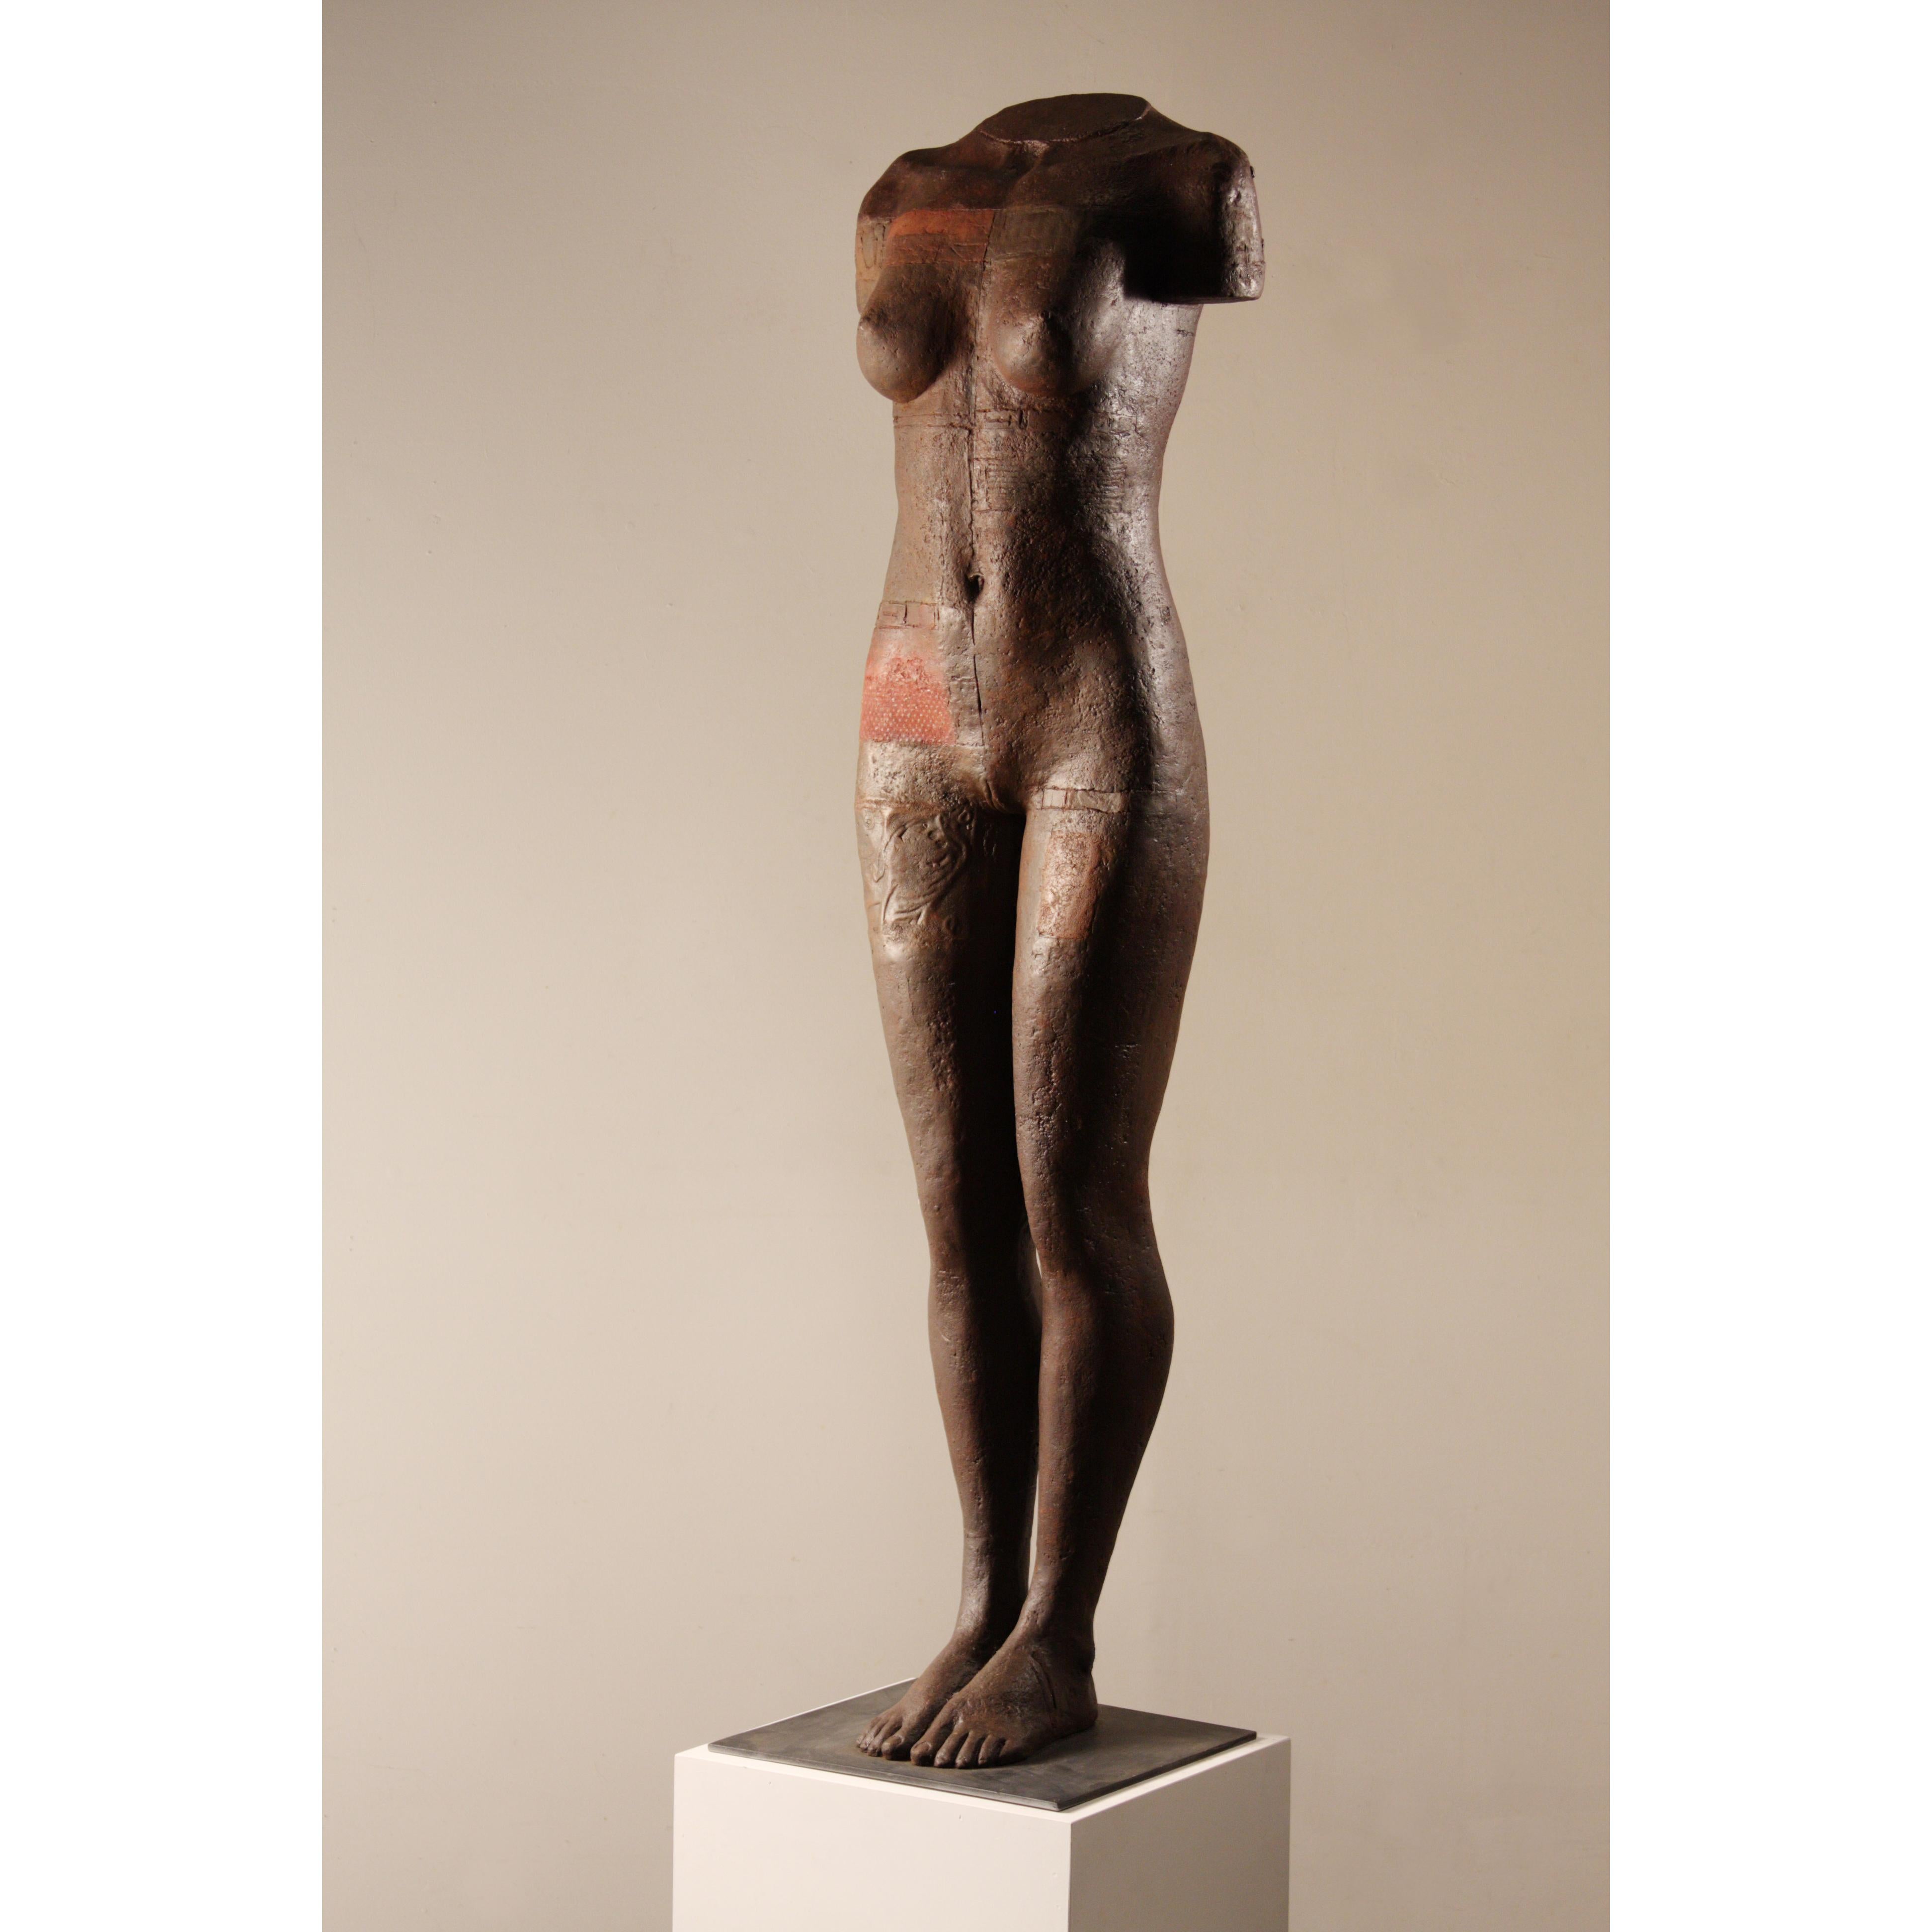 Dan Corbin Nude Sculpture - Her Metal